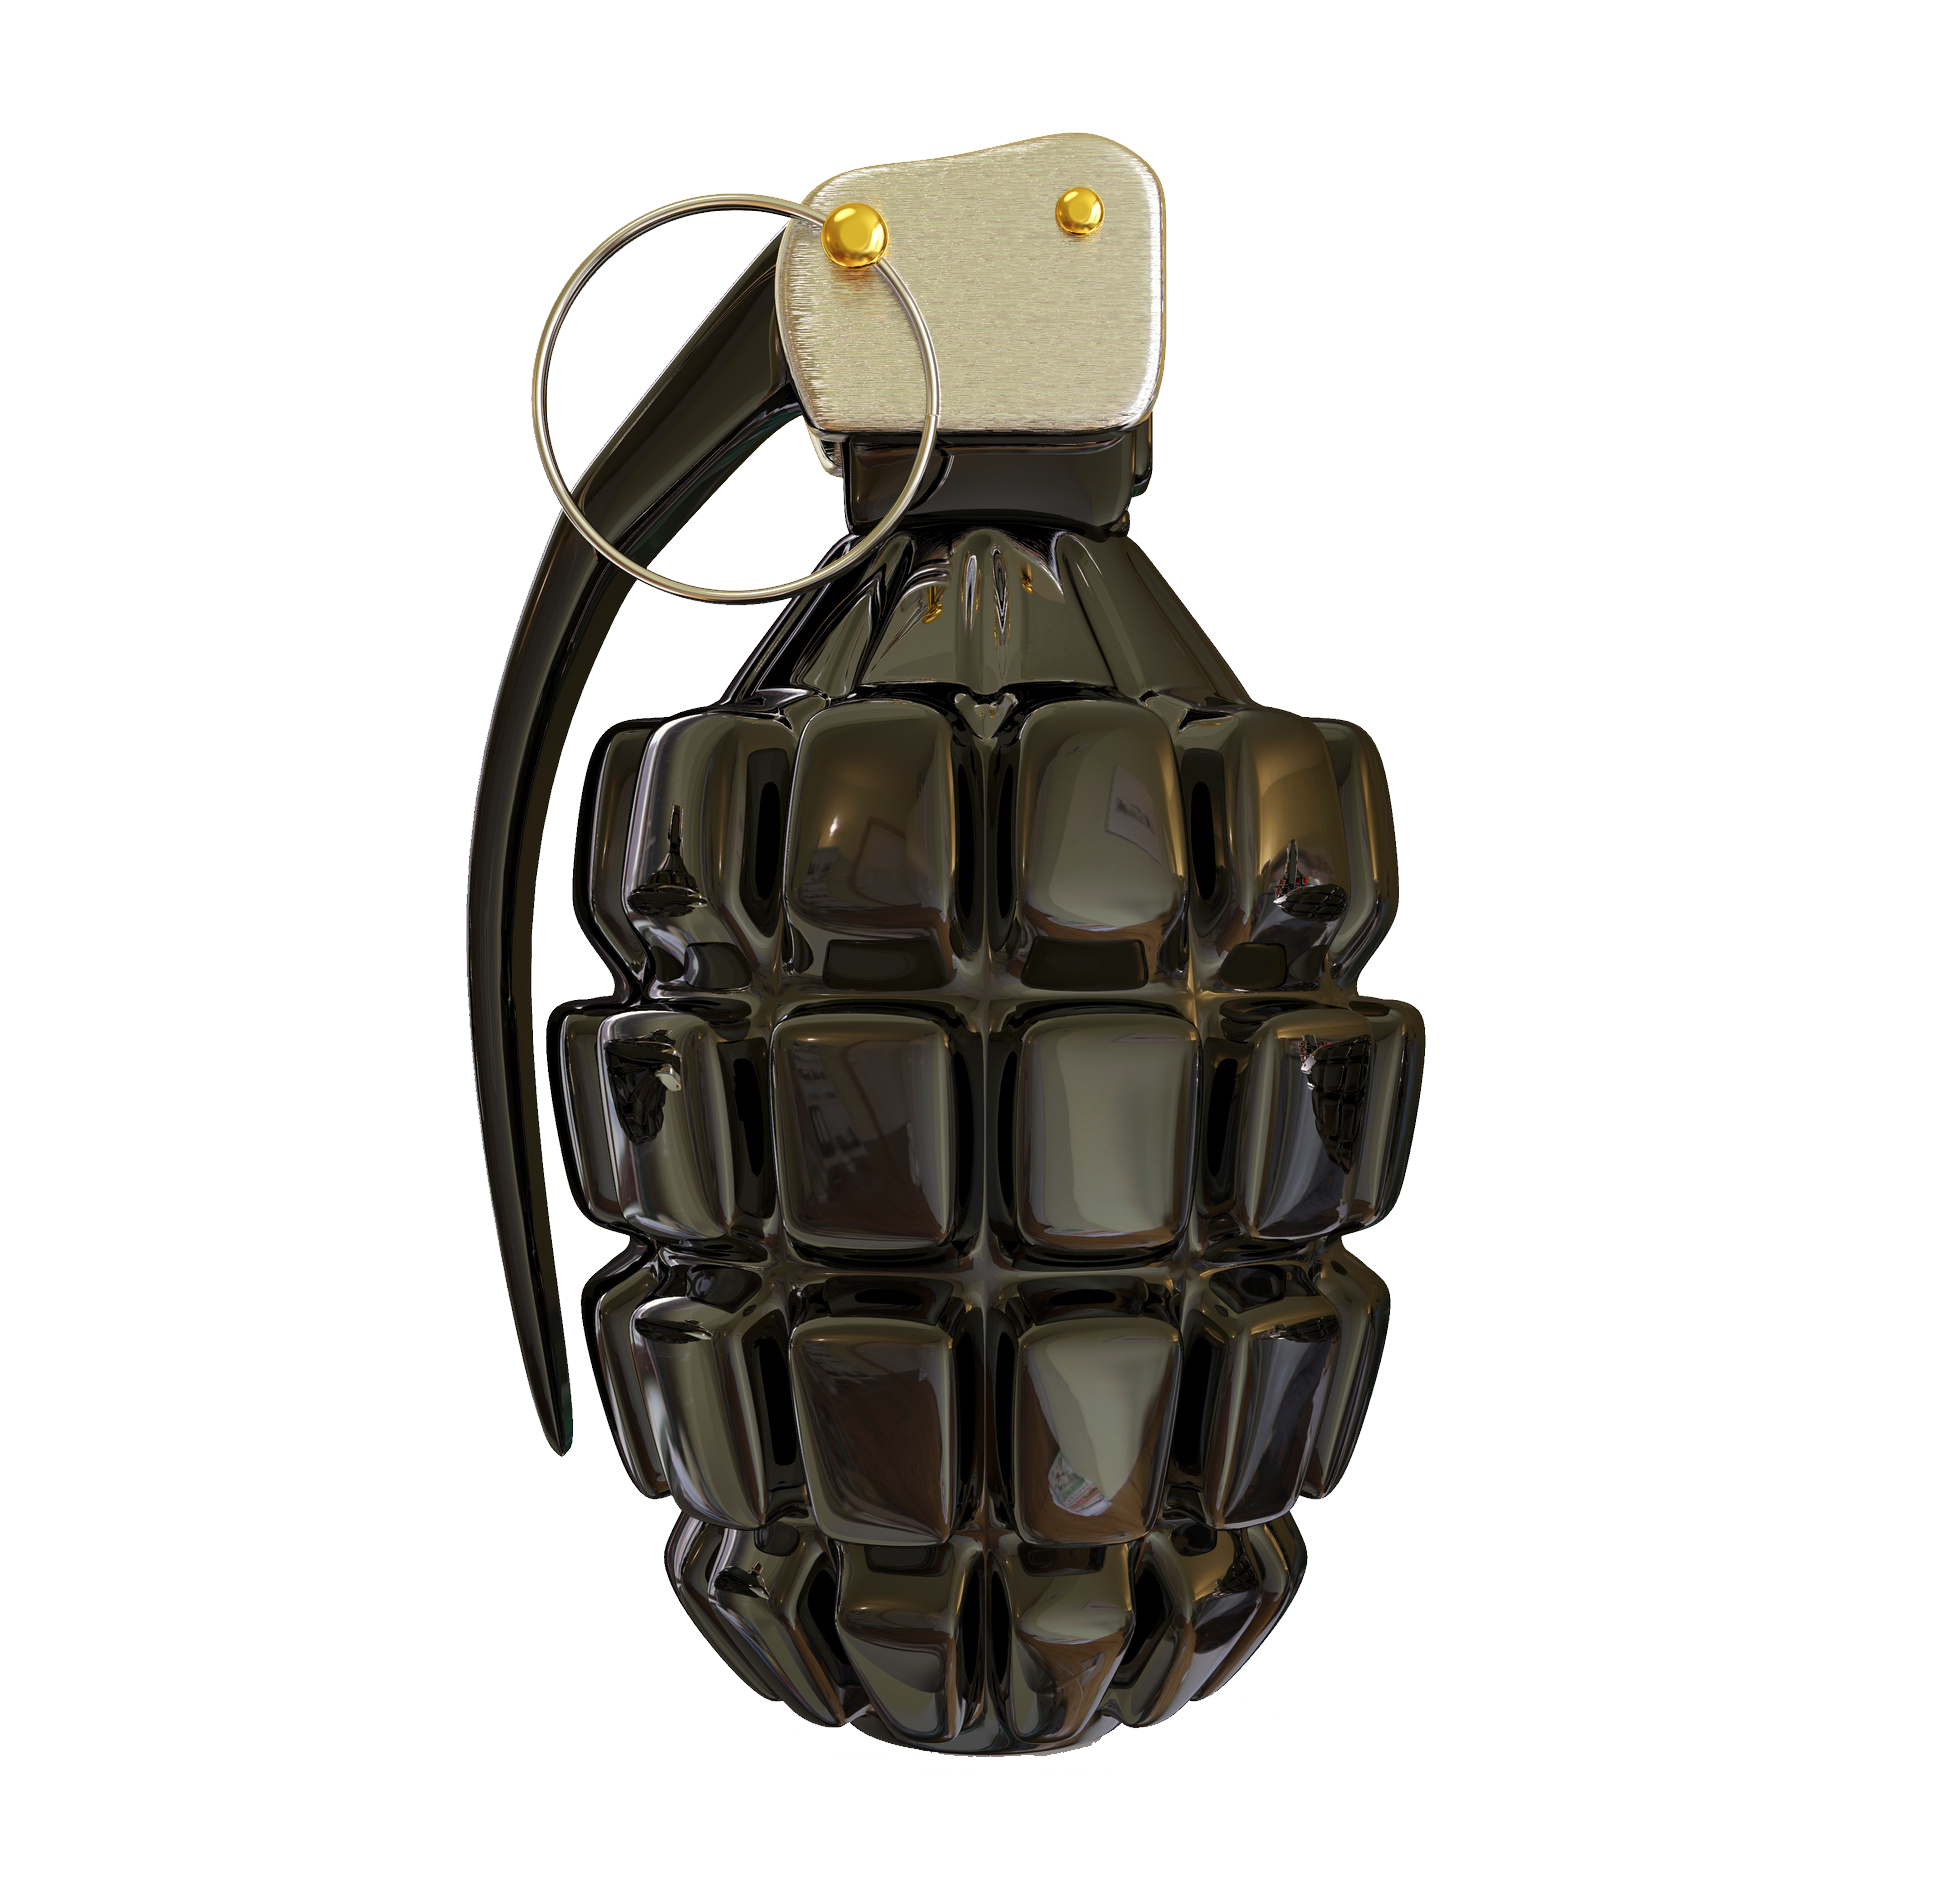 Grenade #9